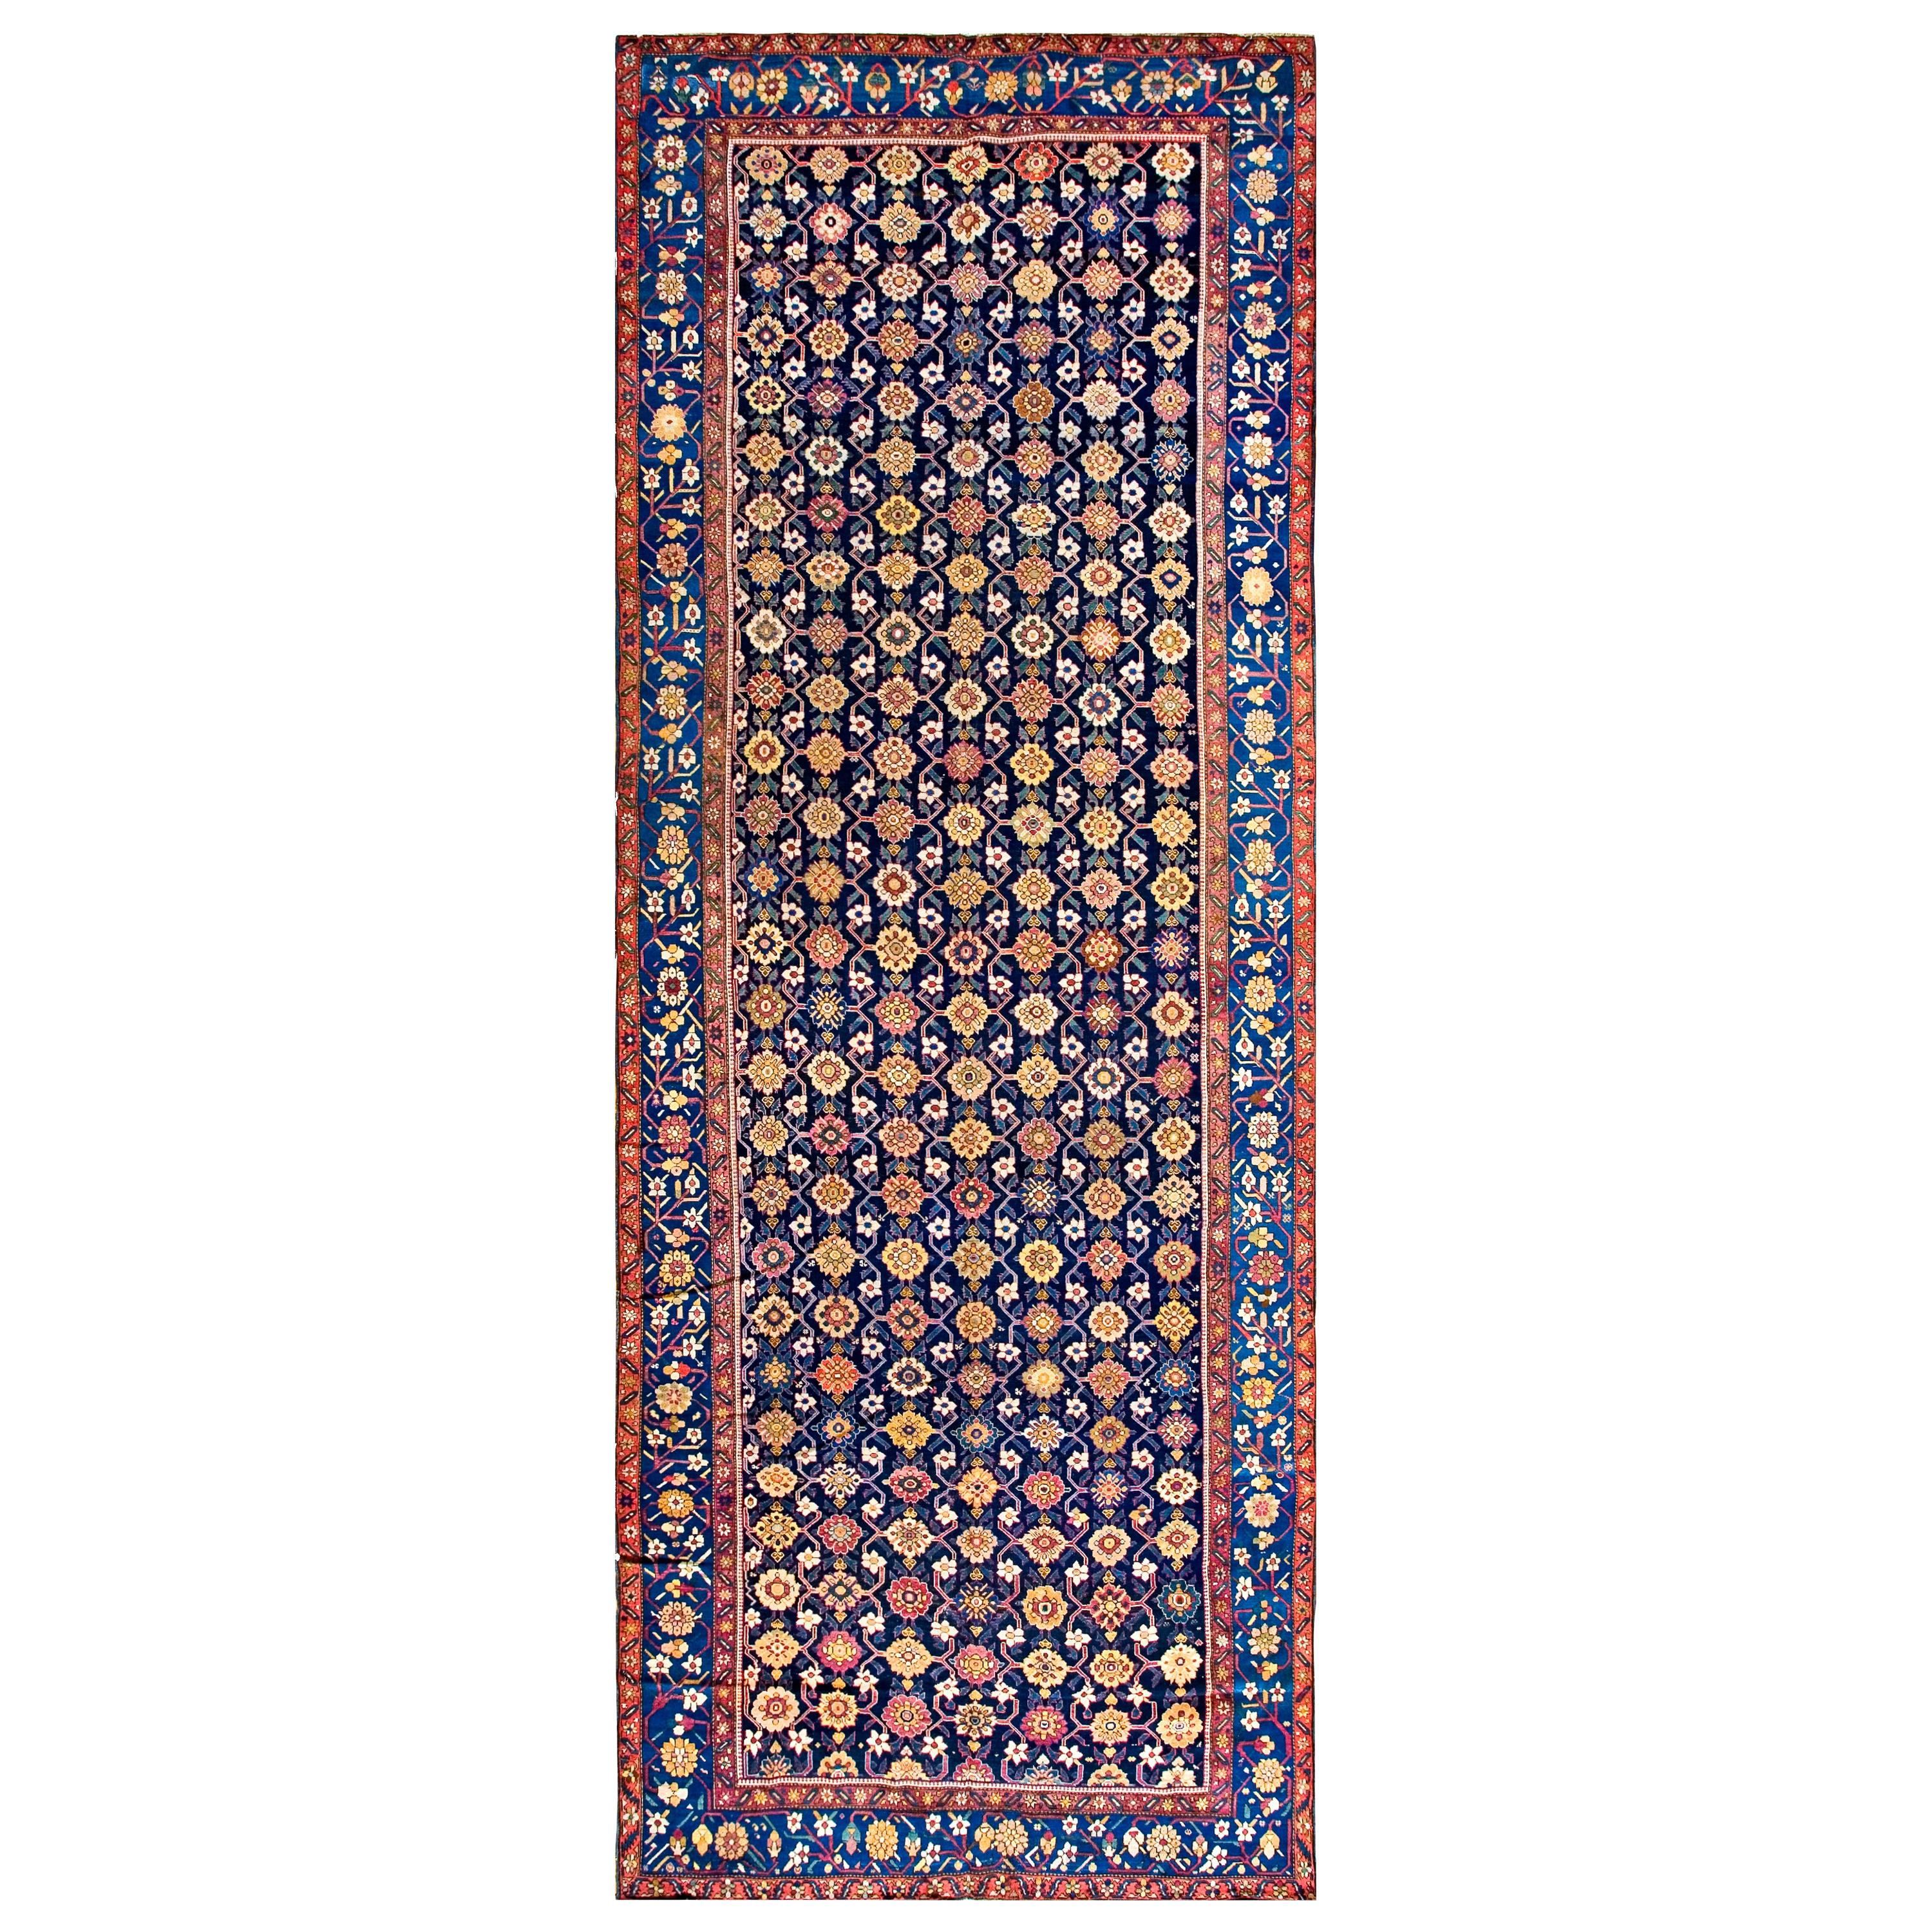 Kaukasischer Karabagh-Galerie-Teppich aus dem 19. Jahrhundert ( 6'10" x 19'3" - 208 x 587")